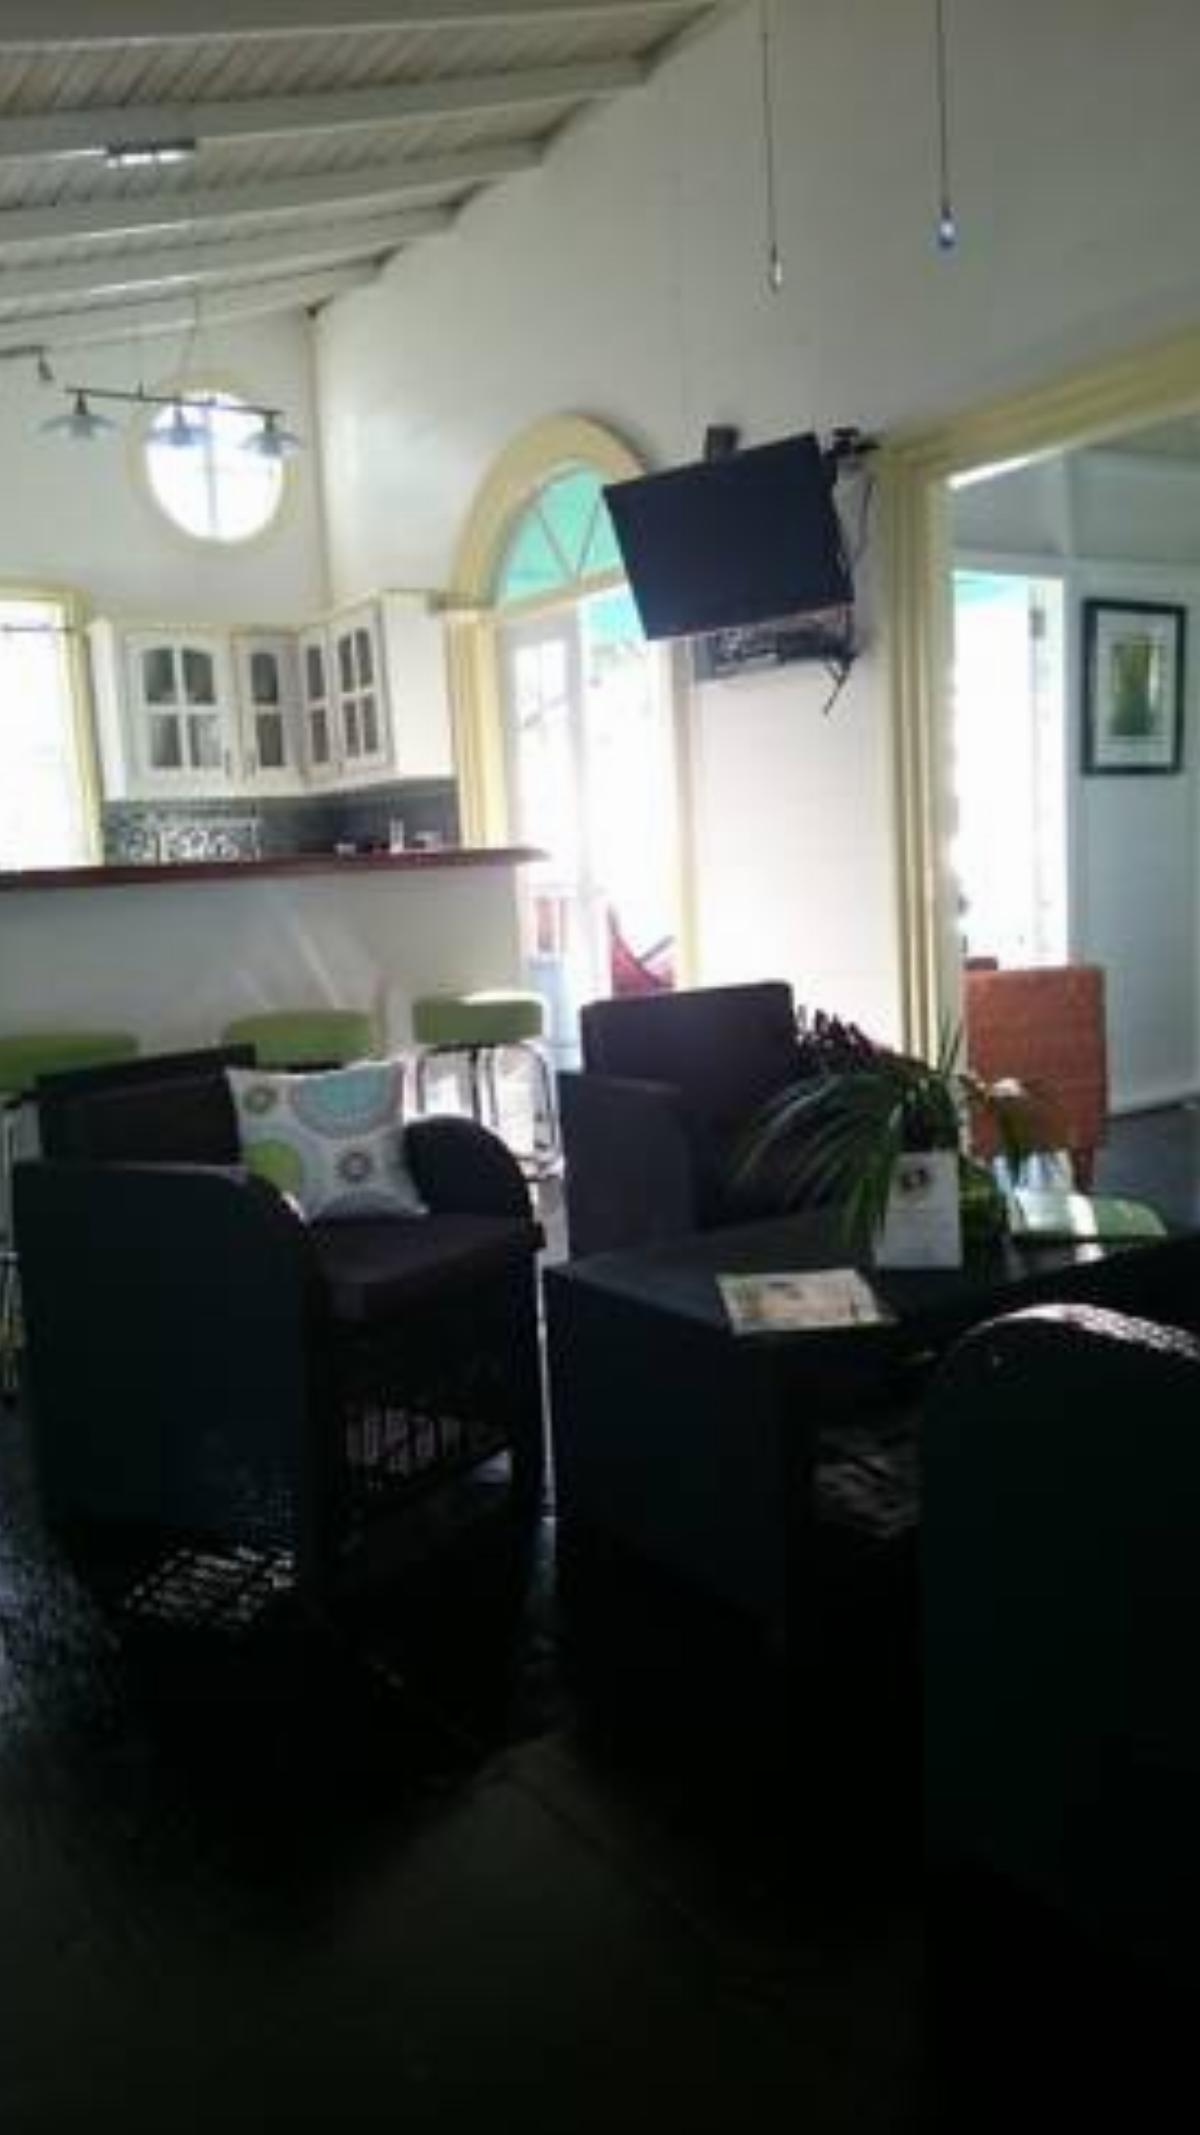 Palm Cottage Hotel Castries Saint Lucia